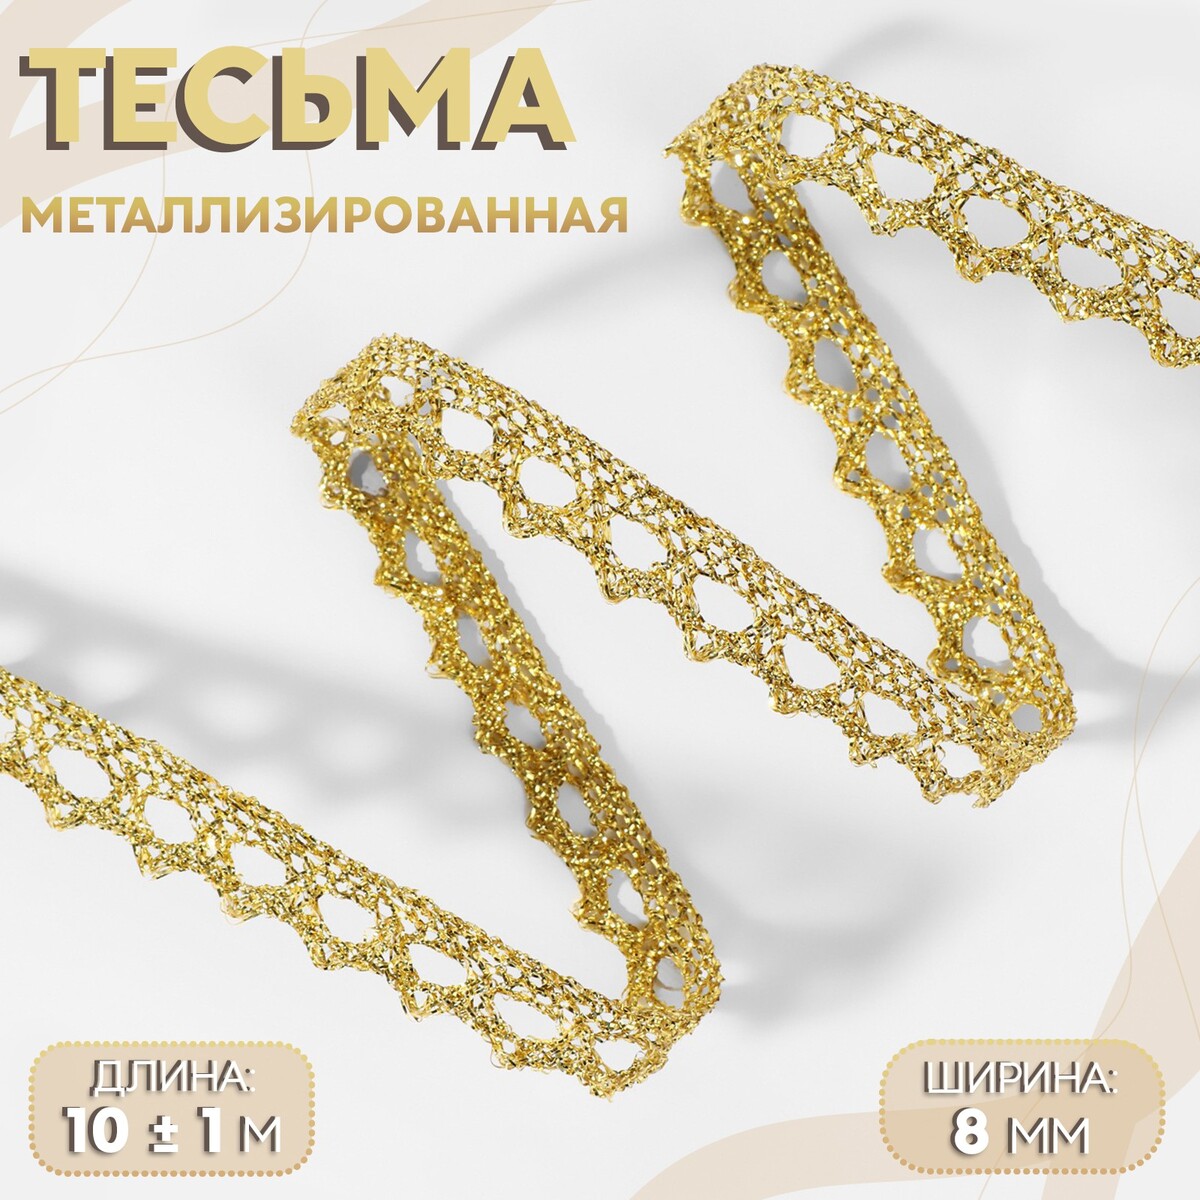 Тесьма декоративная, металлизированная, 10 ± 1 м, 8 мм, цвет золотой тесьма декоративная металлизированная 10 ± 1 м 8 мм серебряный